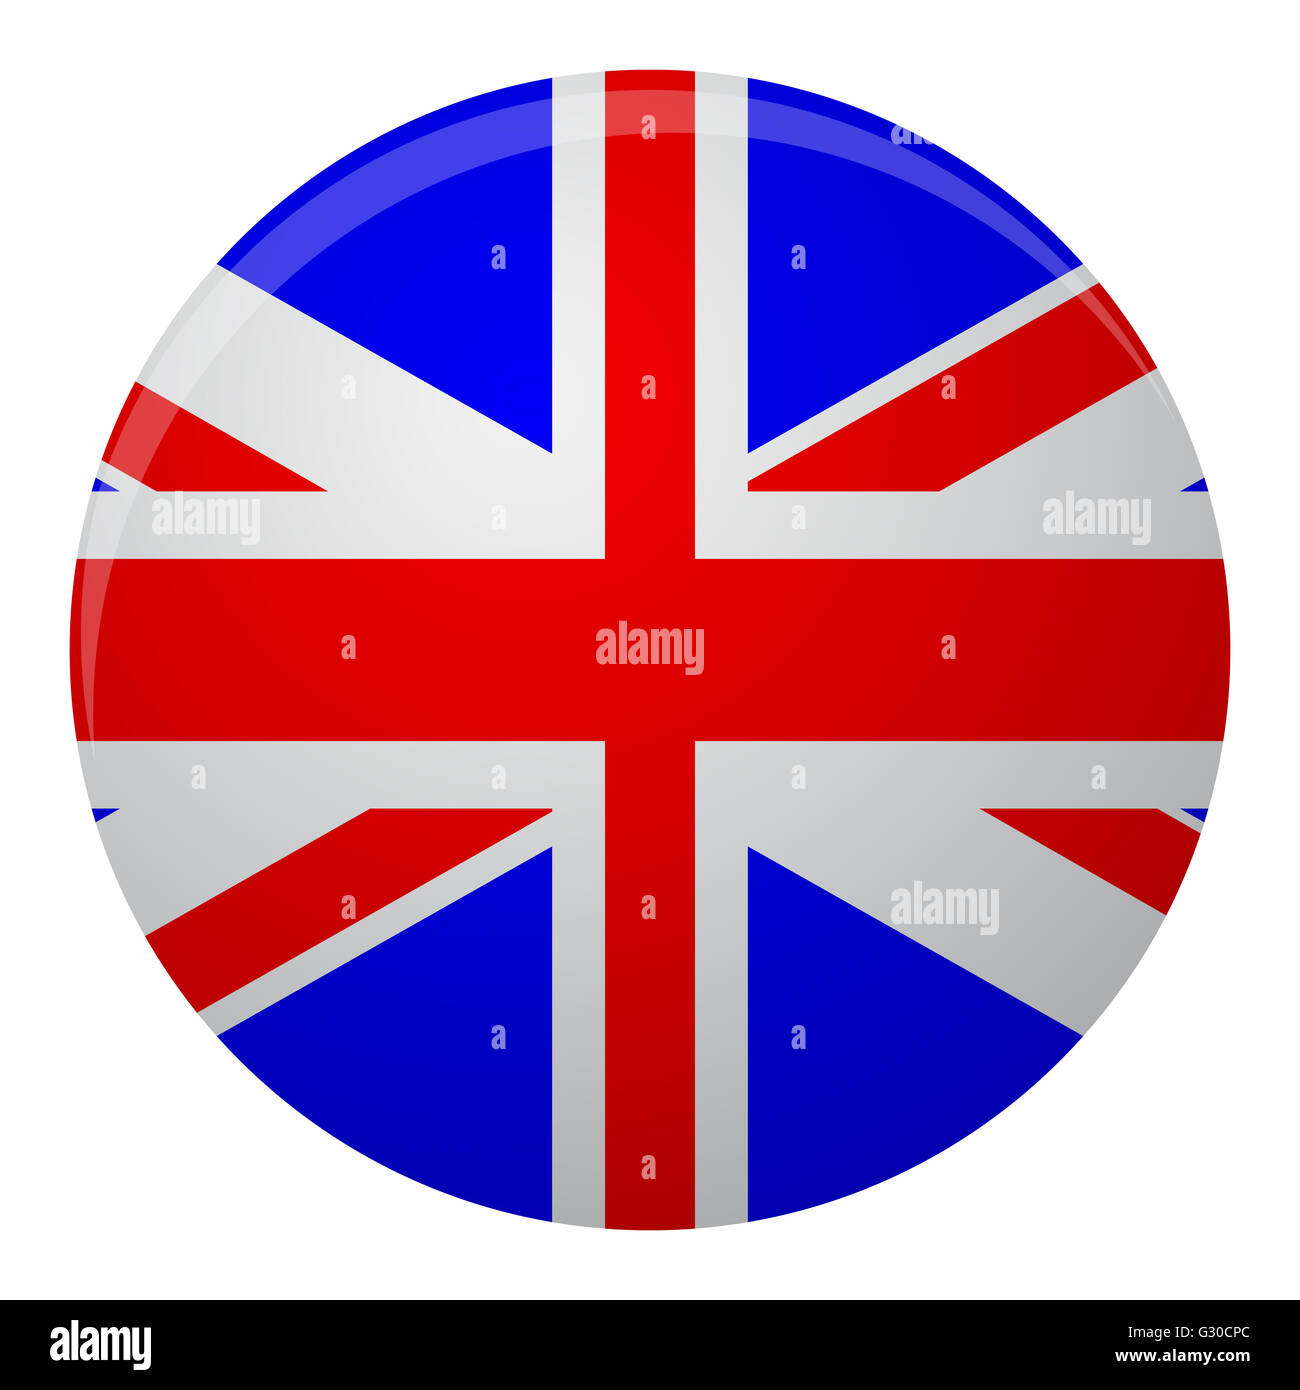 United Kingdom of Great Britain Flaggensymbol flach. Flaggen-Symbol oder das Symbol von großer Königreich Großbritannien. Vektor-illustration Stockfoto